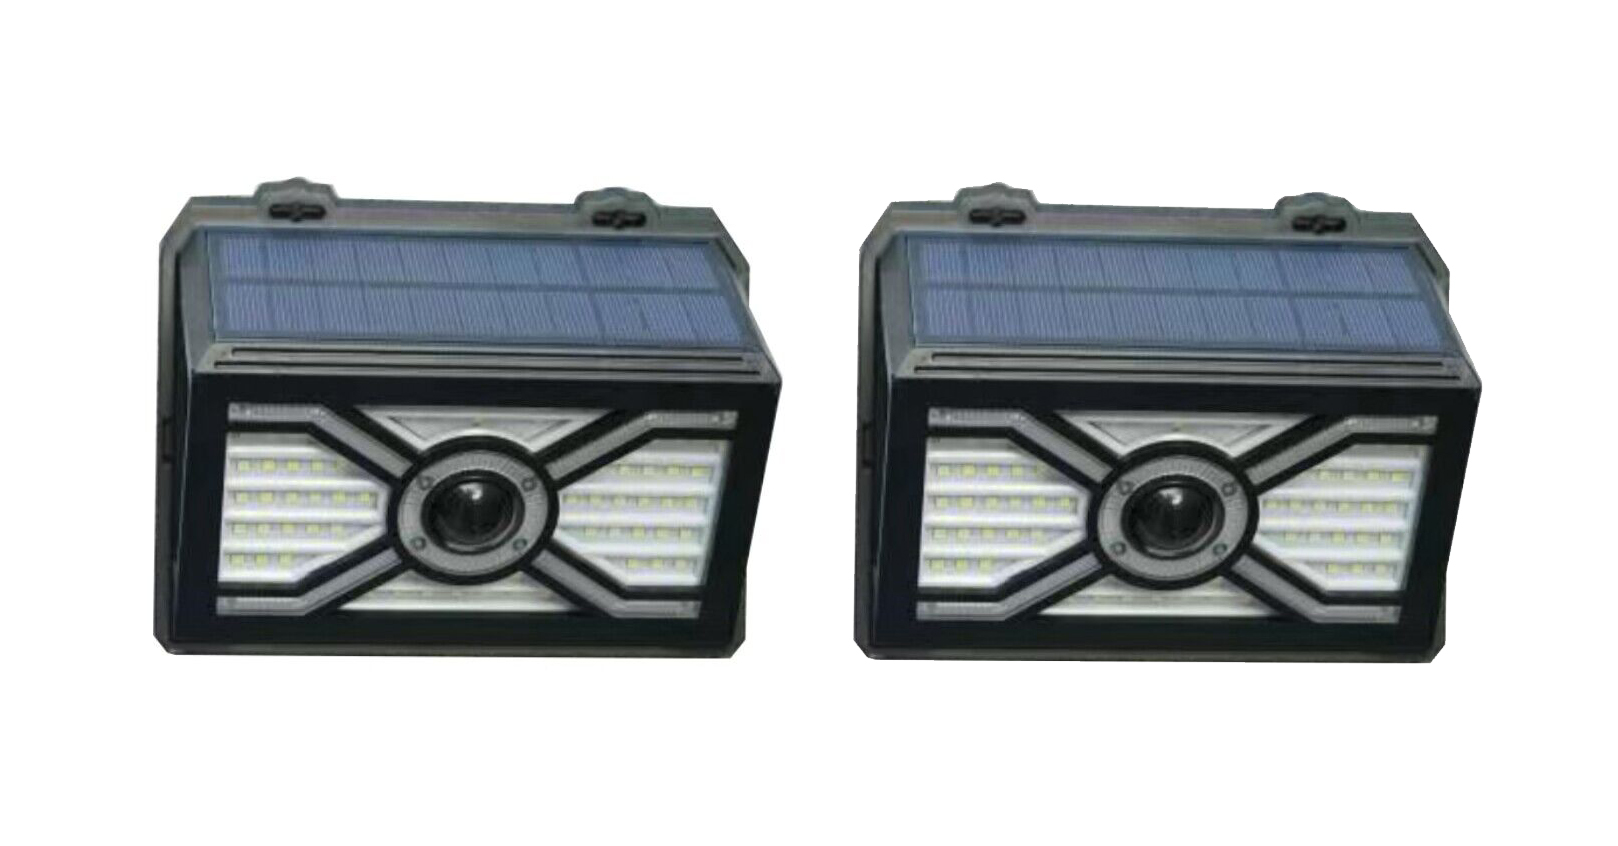 Venkovní solární LED reflektor osvětlení s PIR čidlem, černé 10-600lm 2ks v balení IMMAX NEXT 08484L